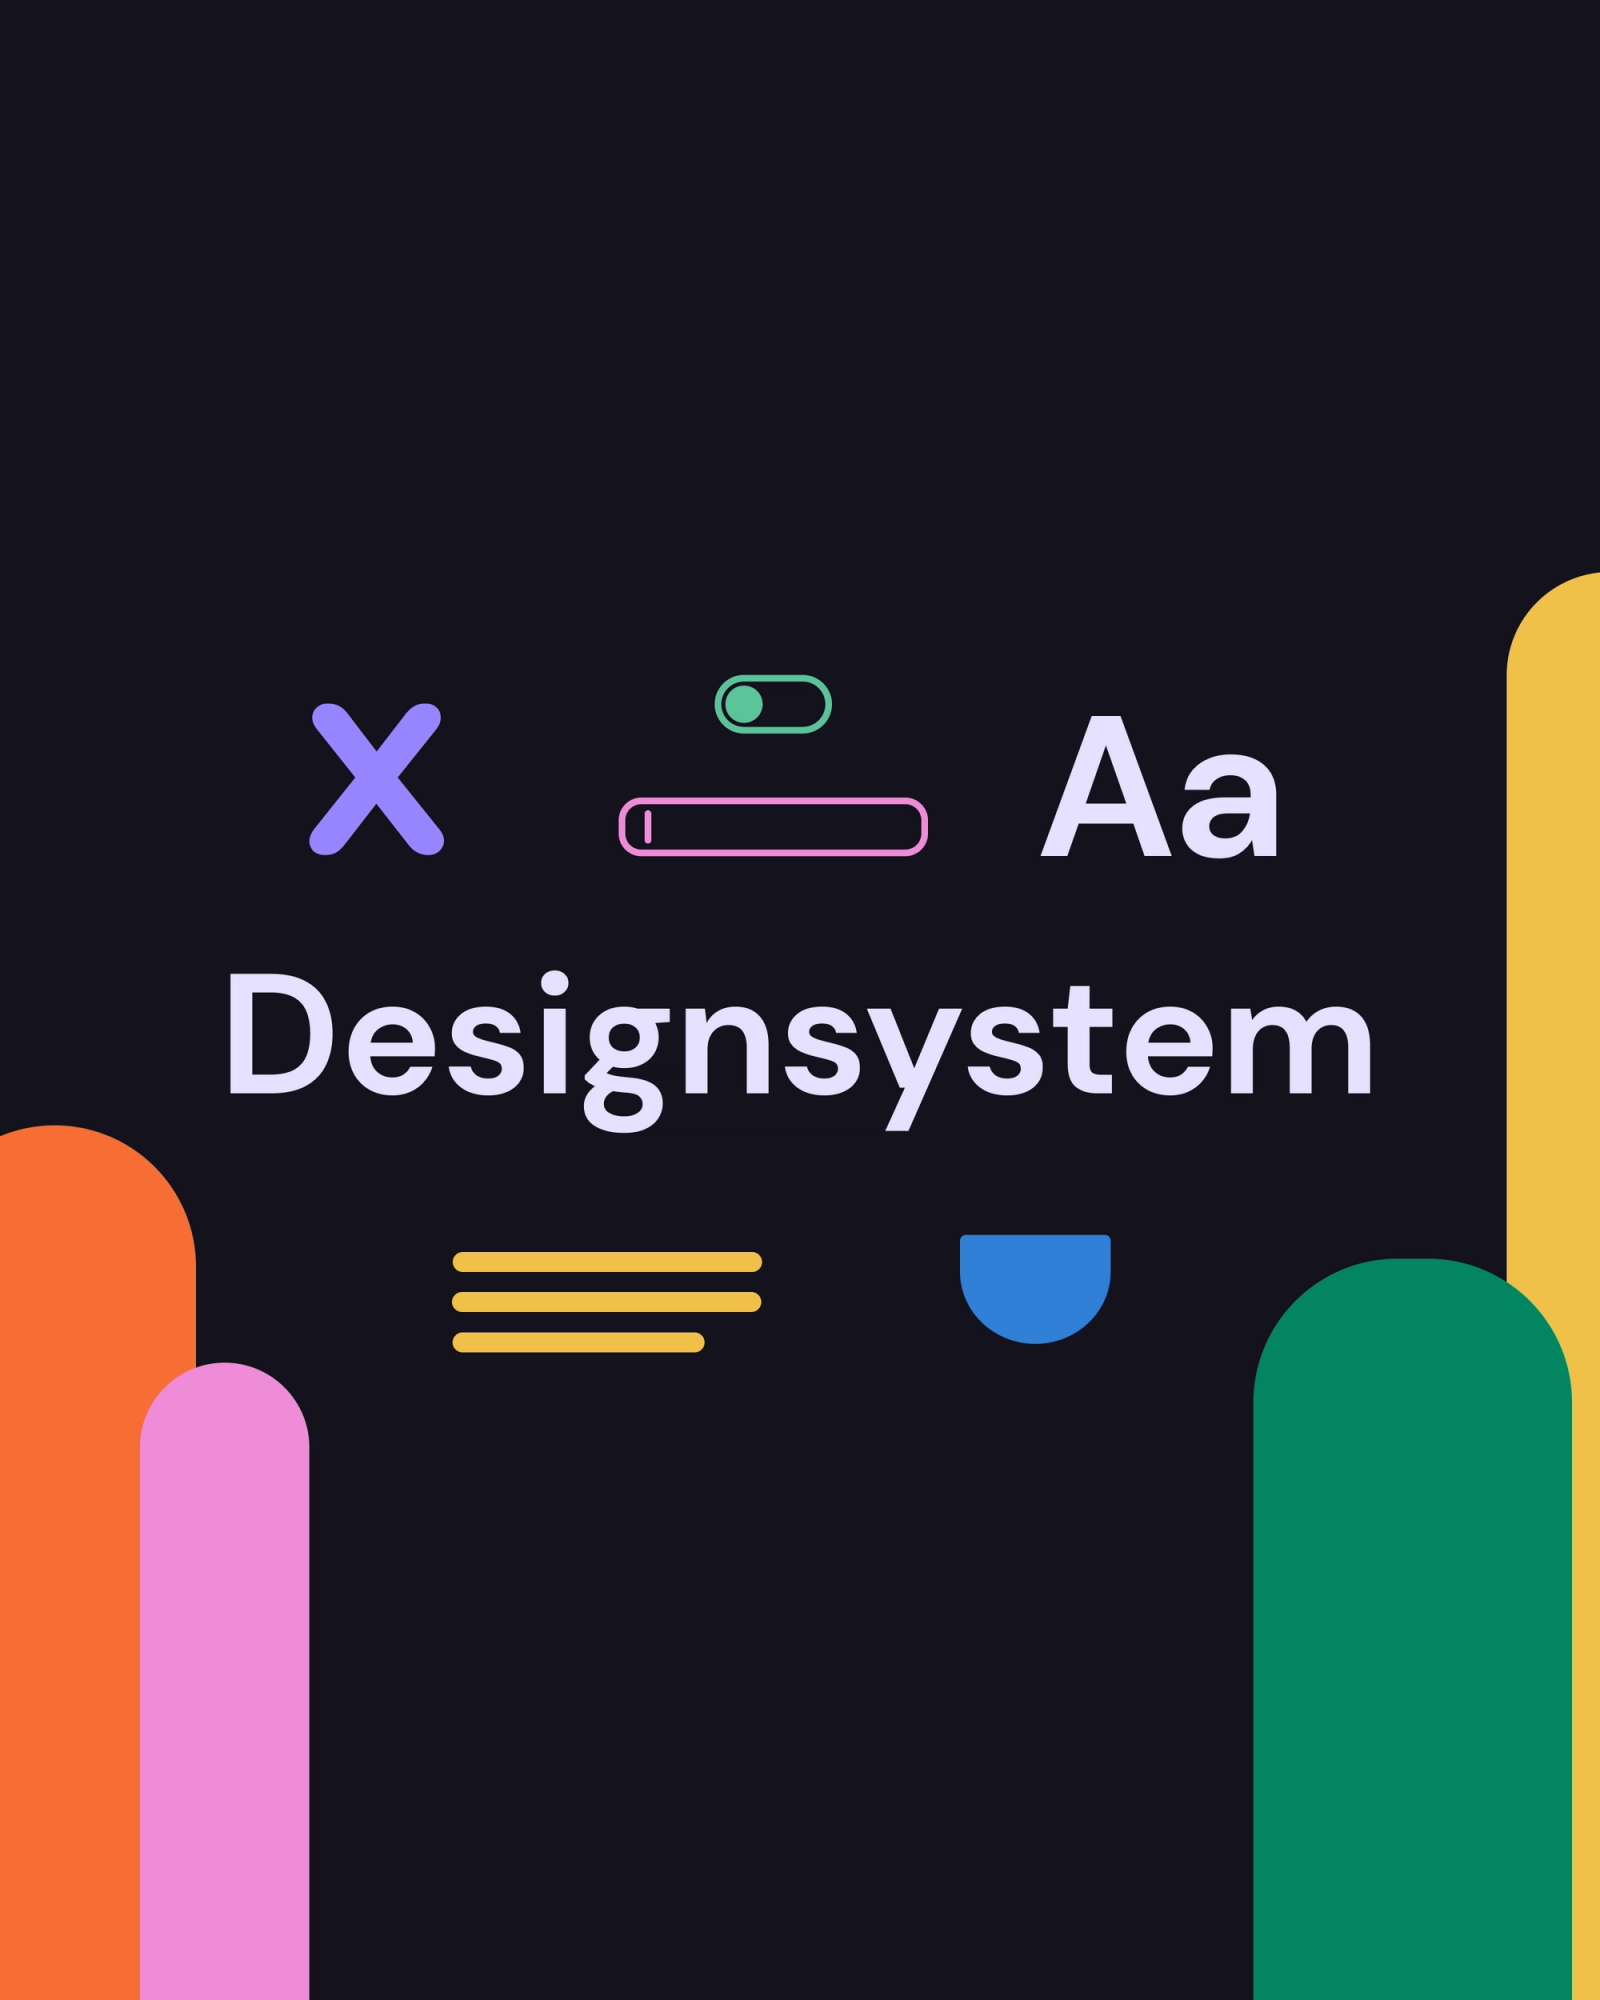 Grafikk der det står designsystem